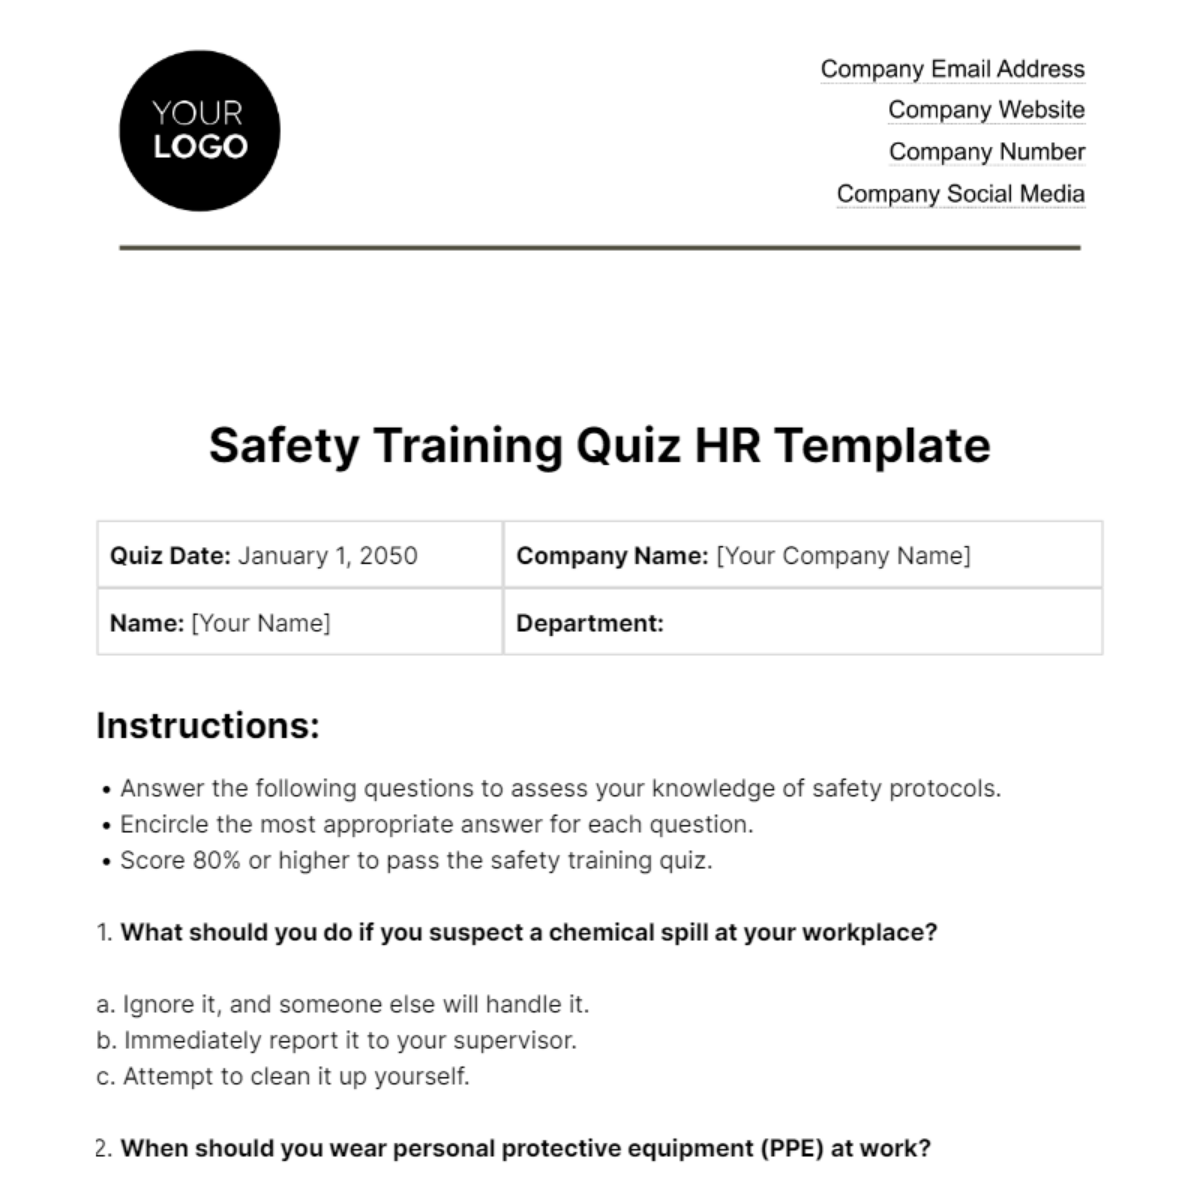 Safety Training Quiz HR Template